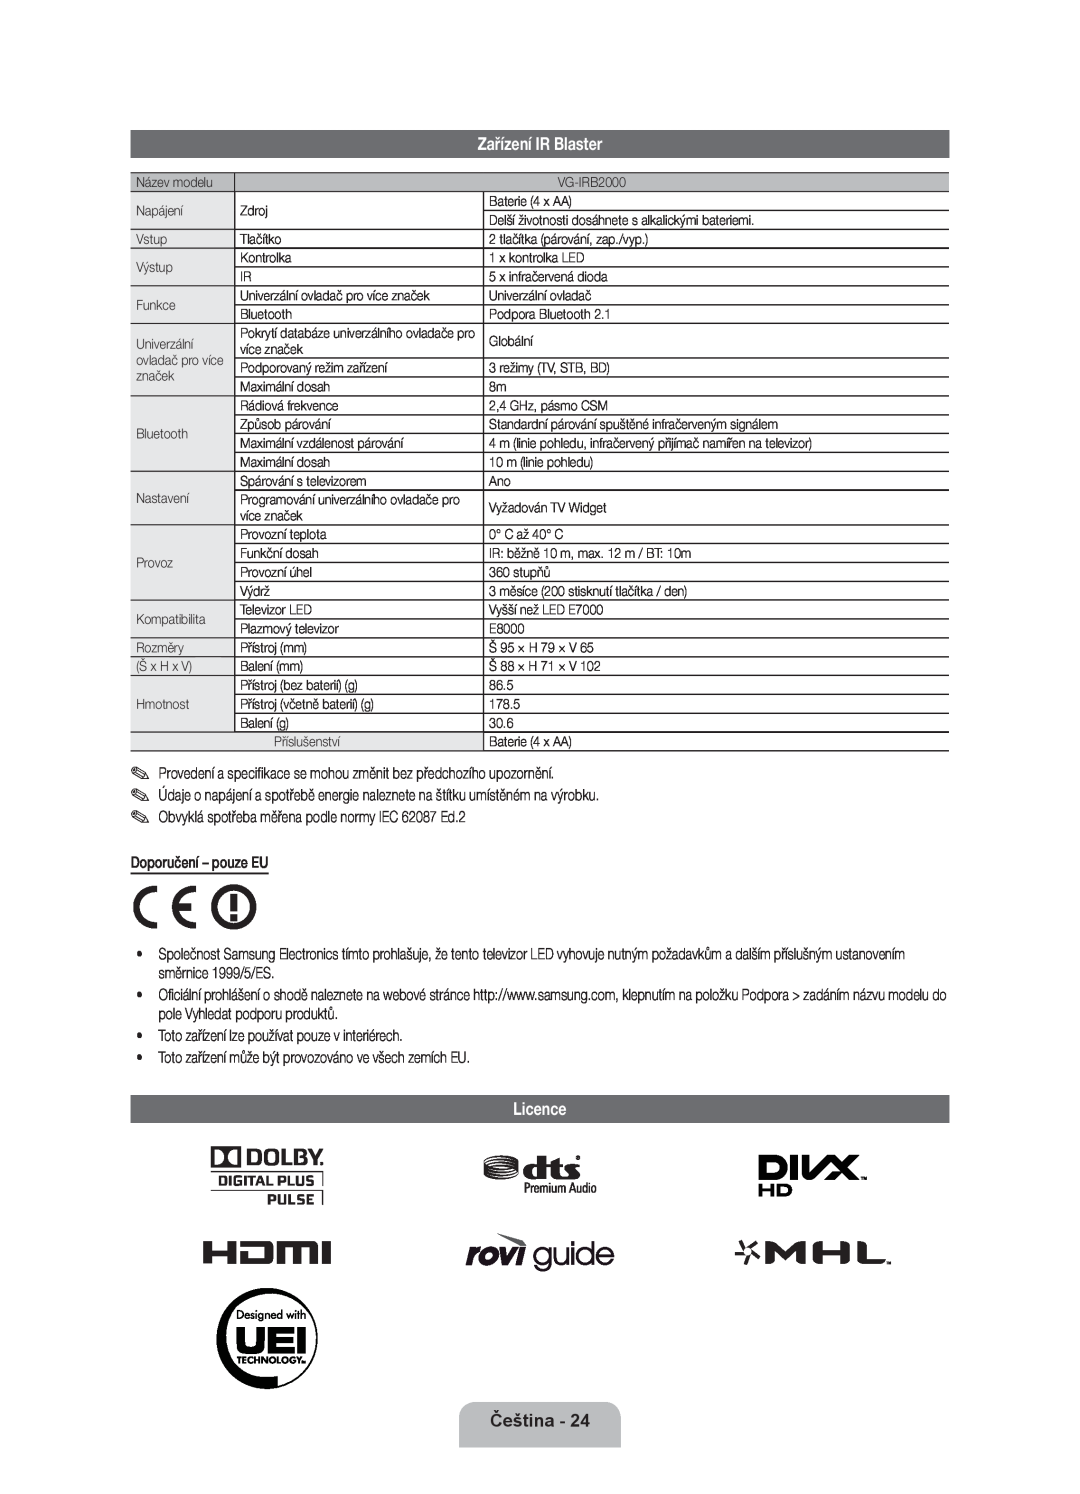 Samsung UE46ES8000SXXN, UE55ES8000SXXH, UE46ES8000SXXH manual Zařízení IR Blaster, Licence, Čeština, Doporučení - pouze EU 